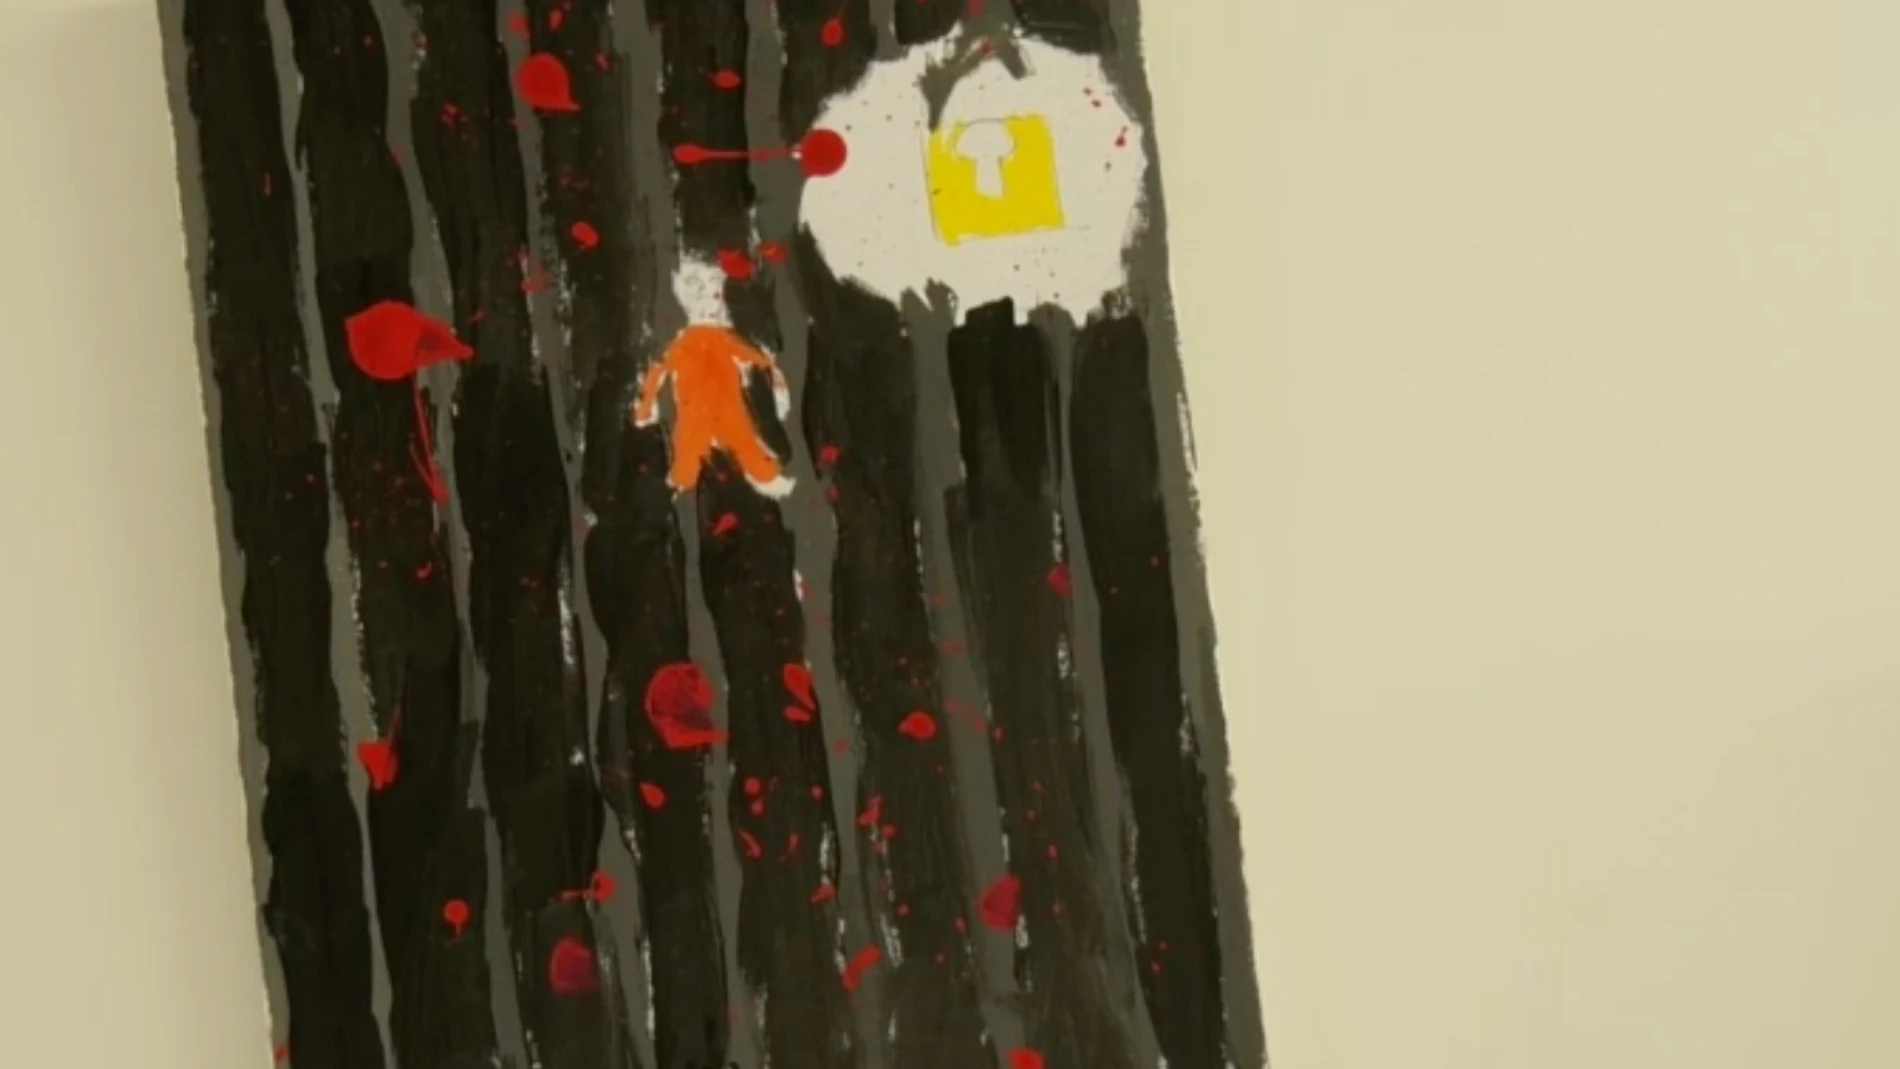 Dibujo del etarra Mikel Otegi en prisión donde se percibe un candado y manchas rojas